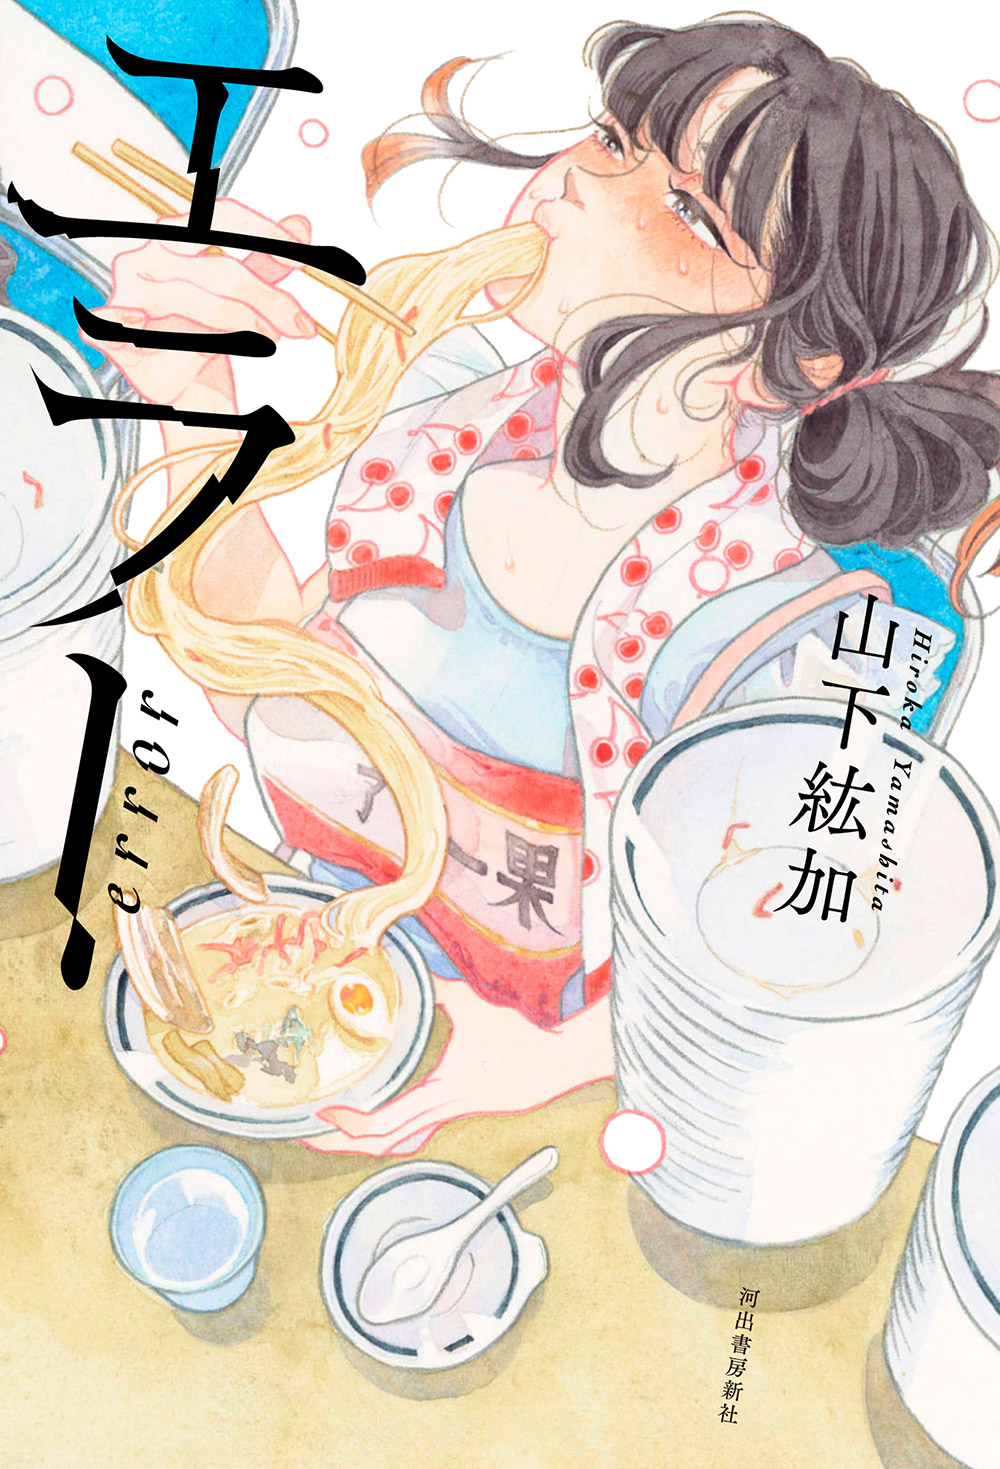 漂亮的插画和排版！日本插画书籍封面设计